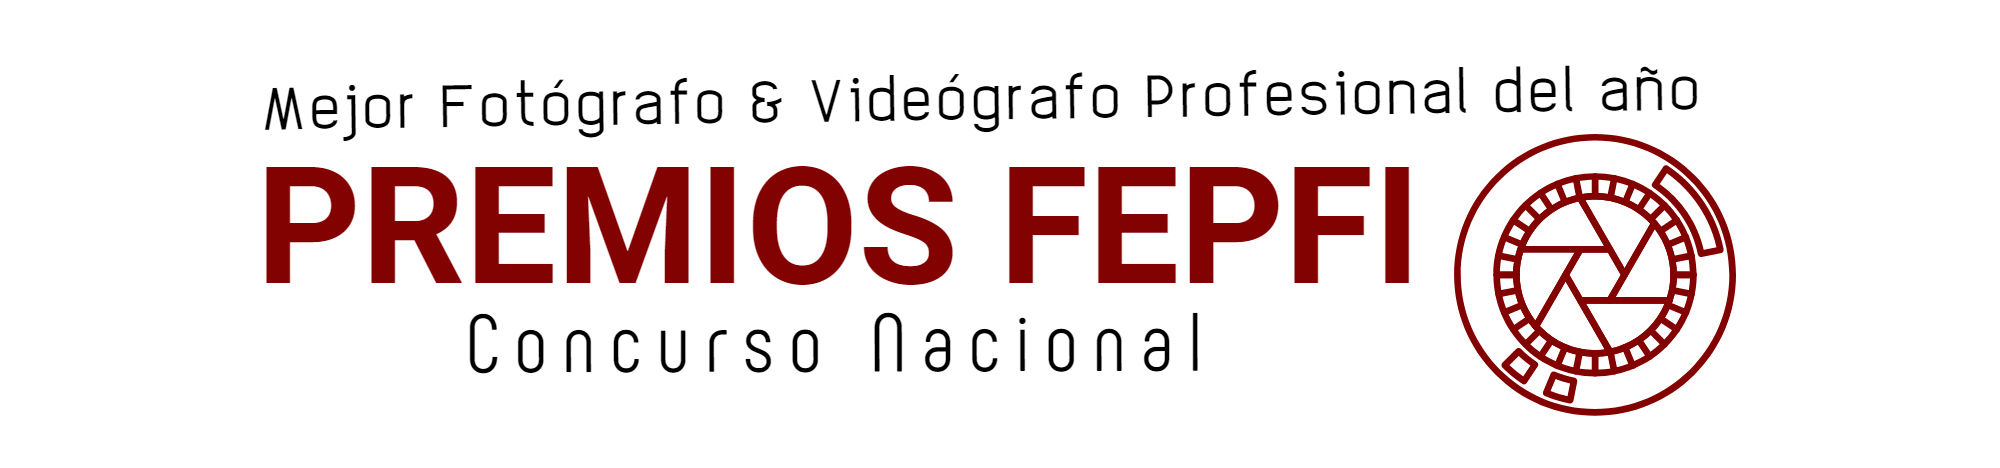 José María Márquez. Fotógrafo de Granada.  - logo-premio-fepfi-2019-banner.jpg